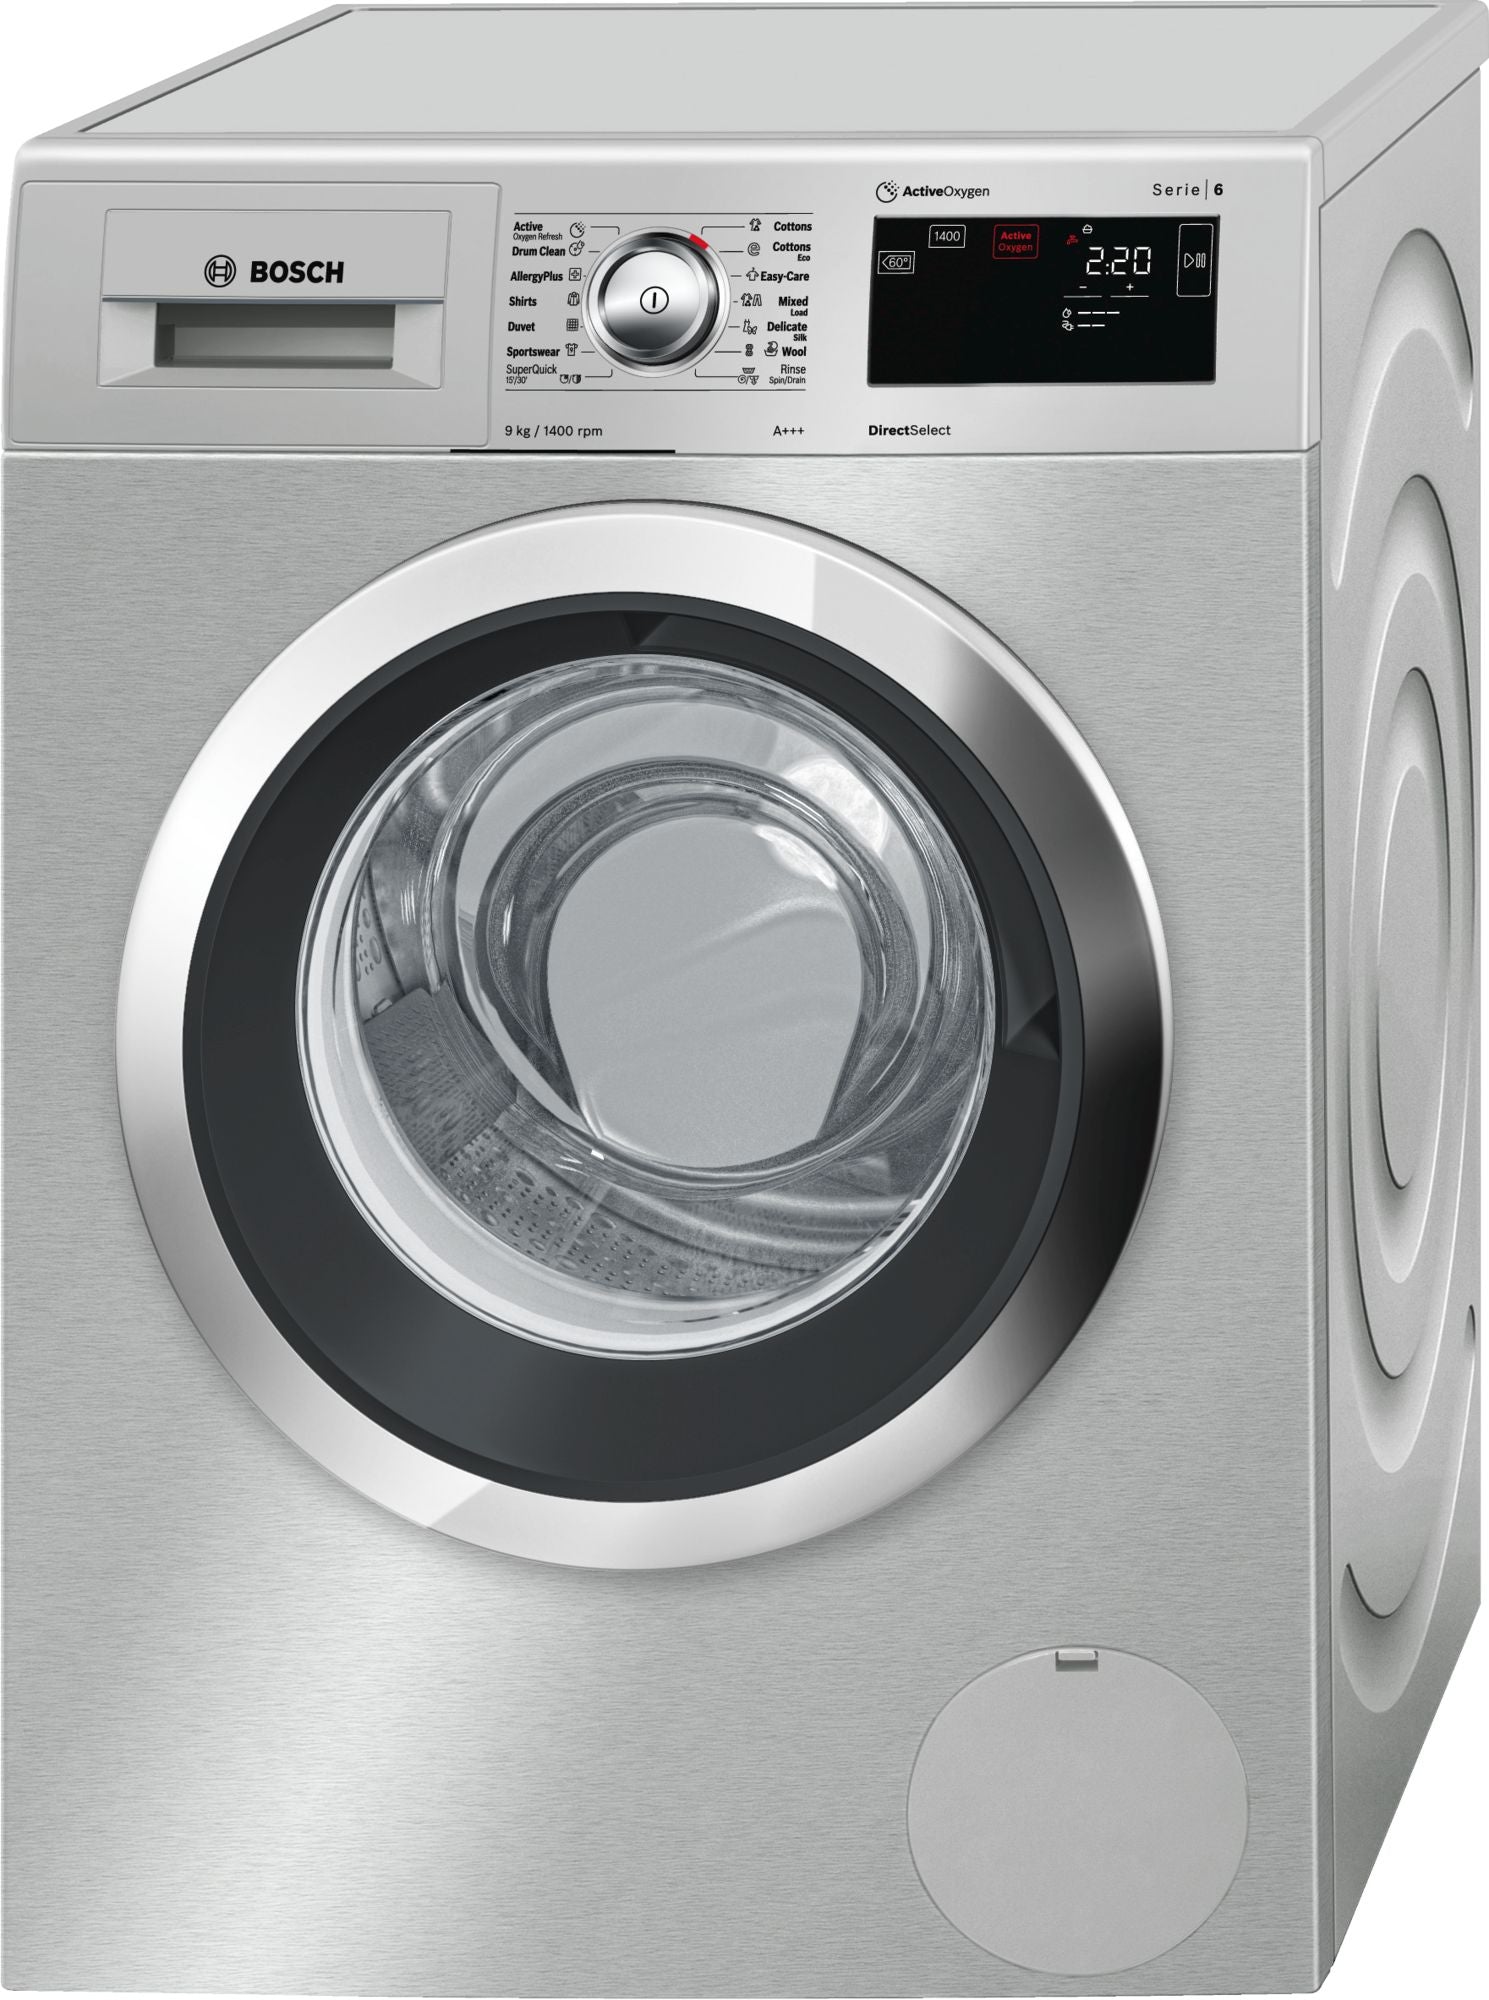 BOSCH 9kg Front Loader Washing Machine - Silver Inox - Active Oxygen - Serie 6 - WAT2878XZA - Artisans Trade Depot